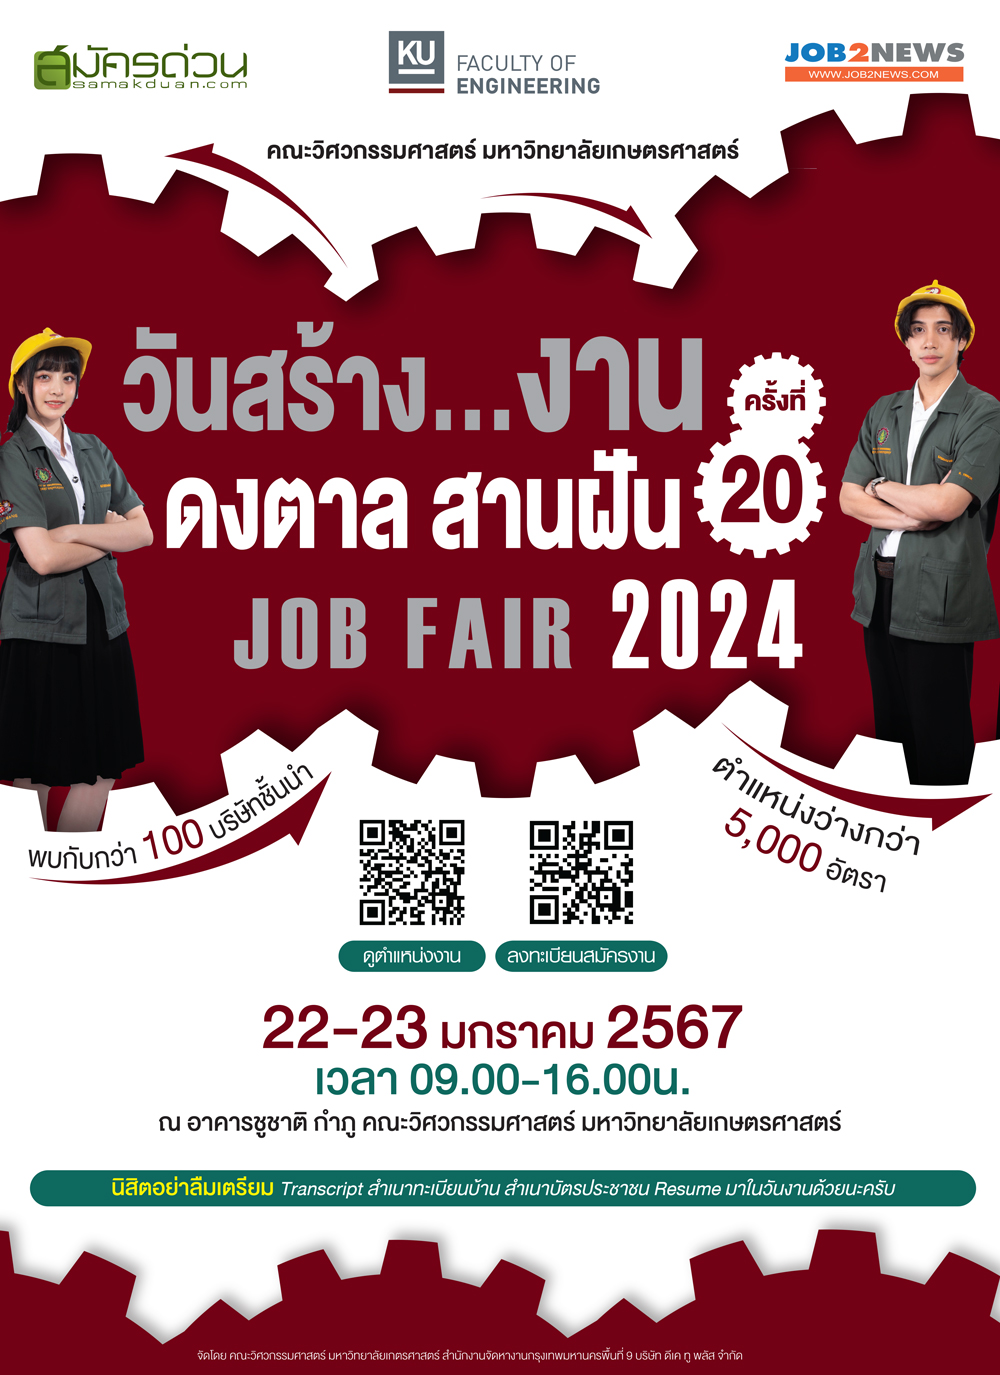 วันสร้างงาน ดงตาล สานฝัน ครั้งที่ 20 (Job Fair 2024)